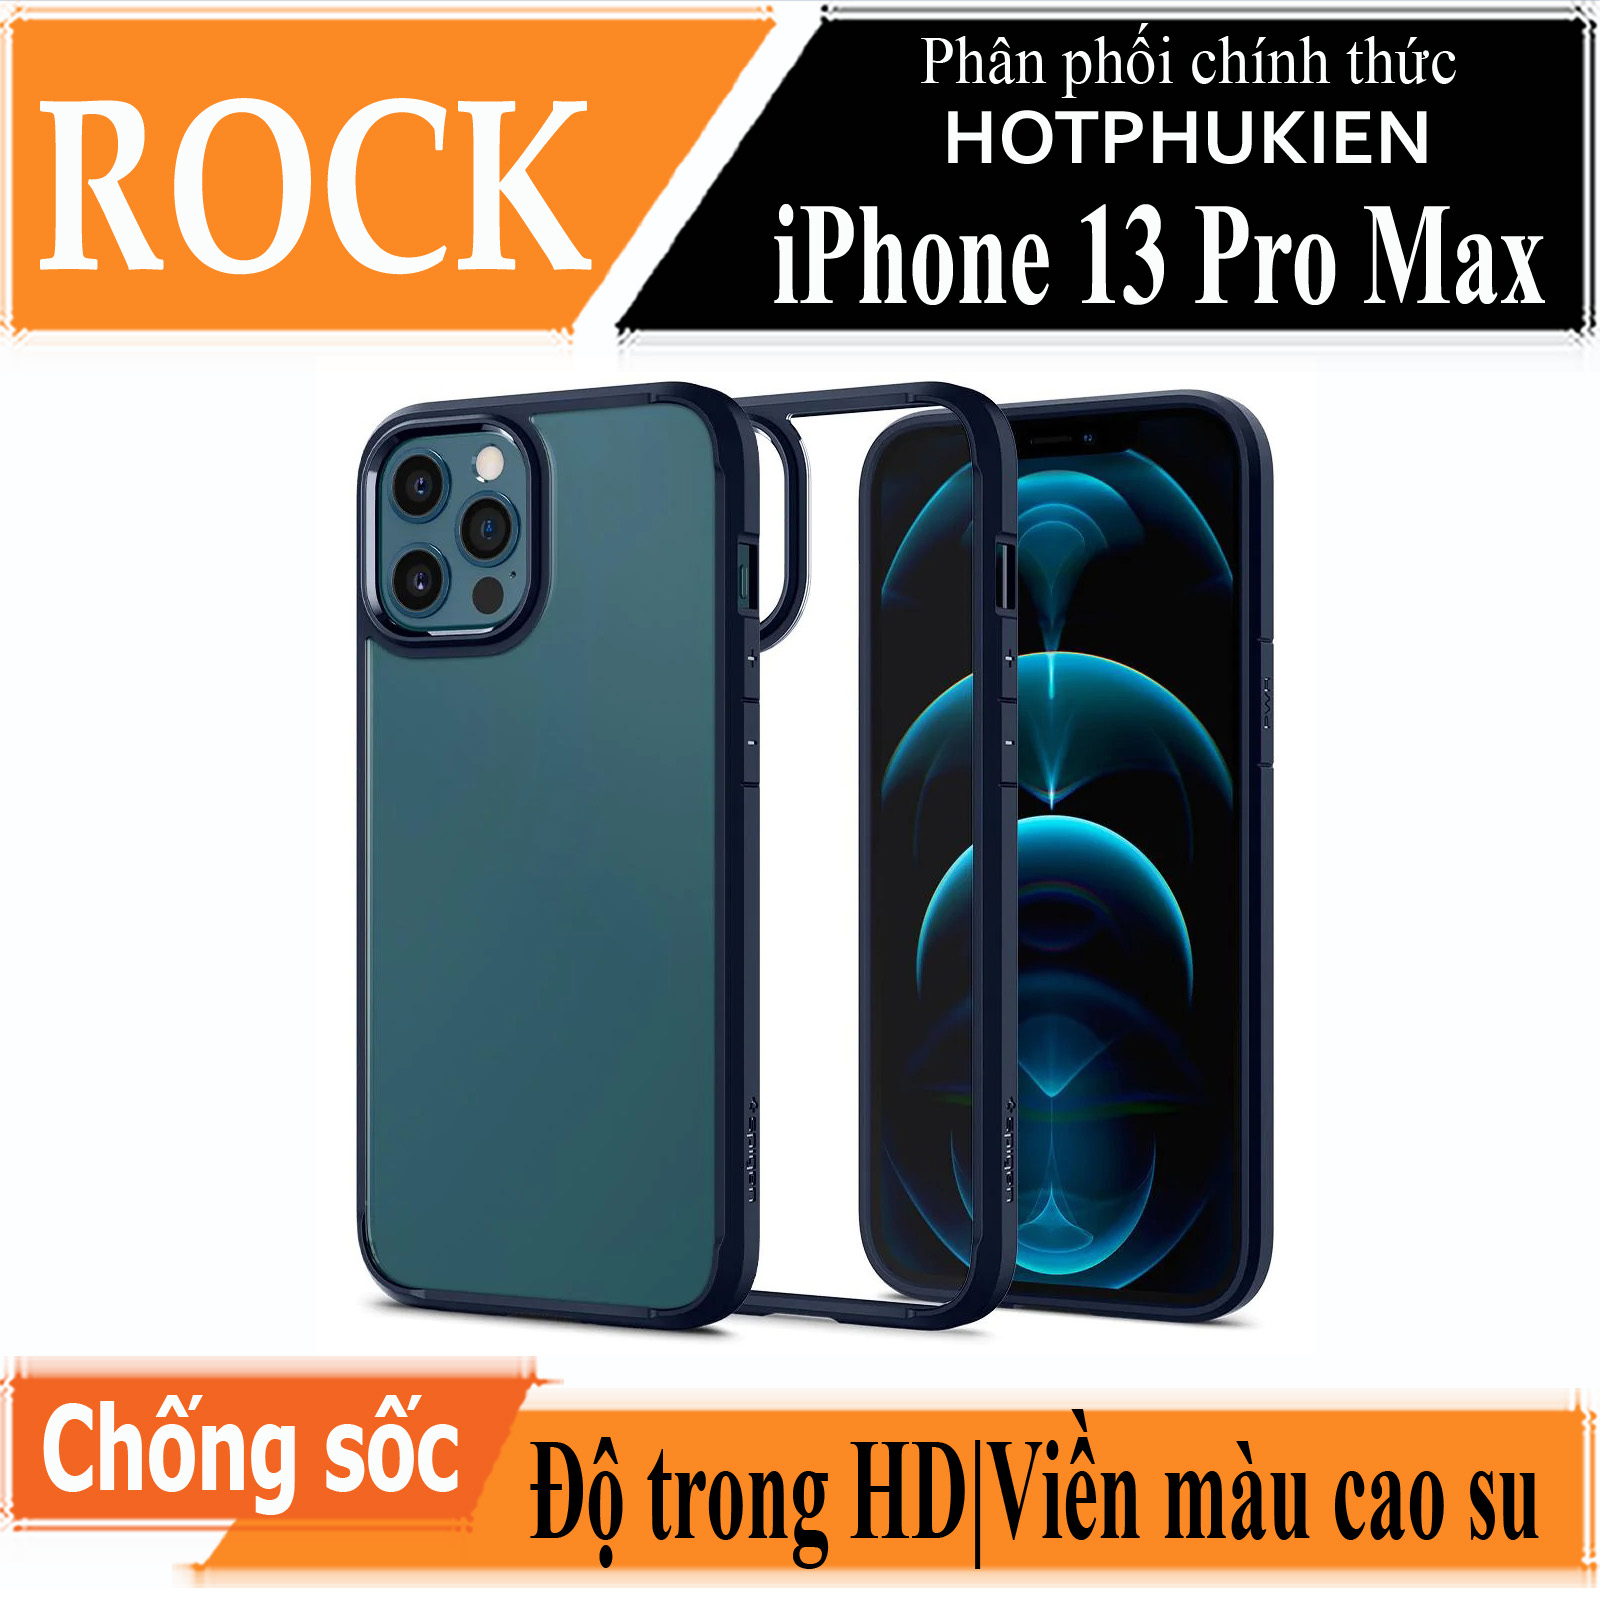 Ốp lưng viền cao su cho iPhone 13 Pro Max (6.7 inch) Hiệu Rock hybrid Protective Case